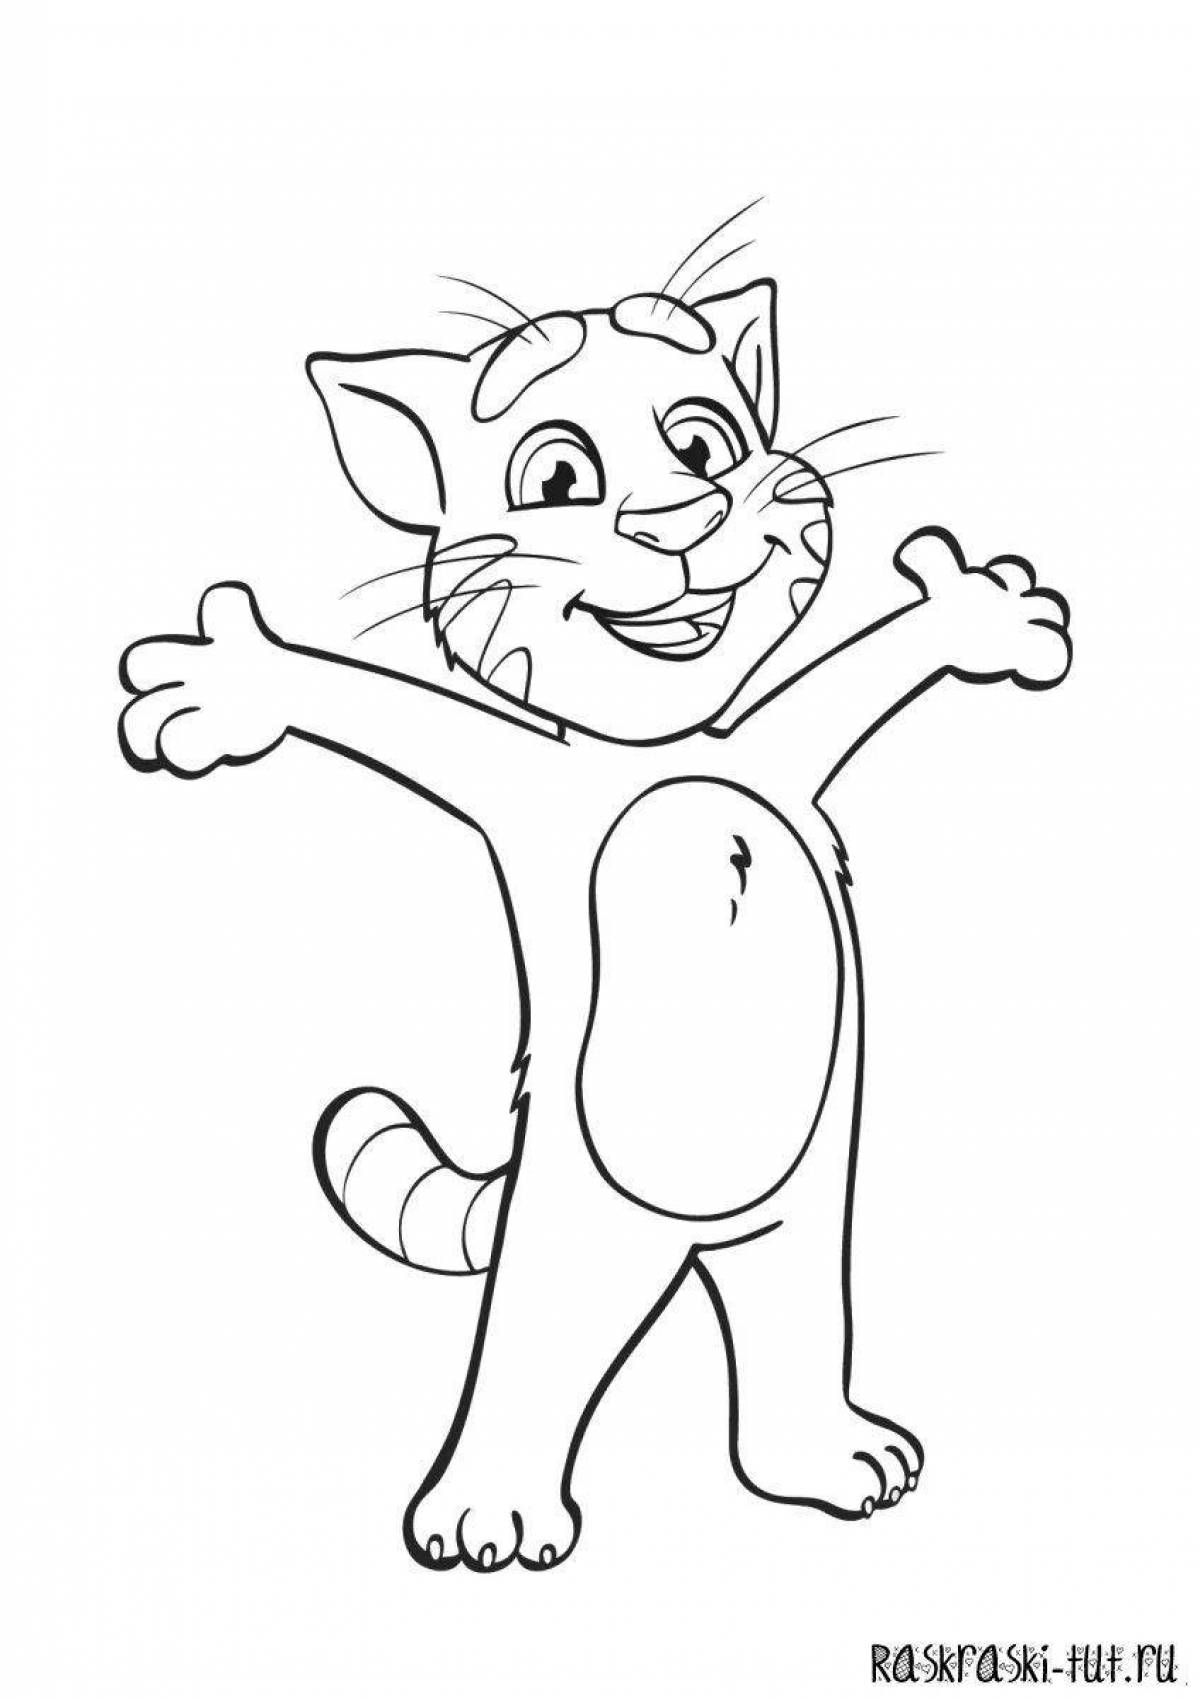 Fun coloring cartoon cat